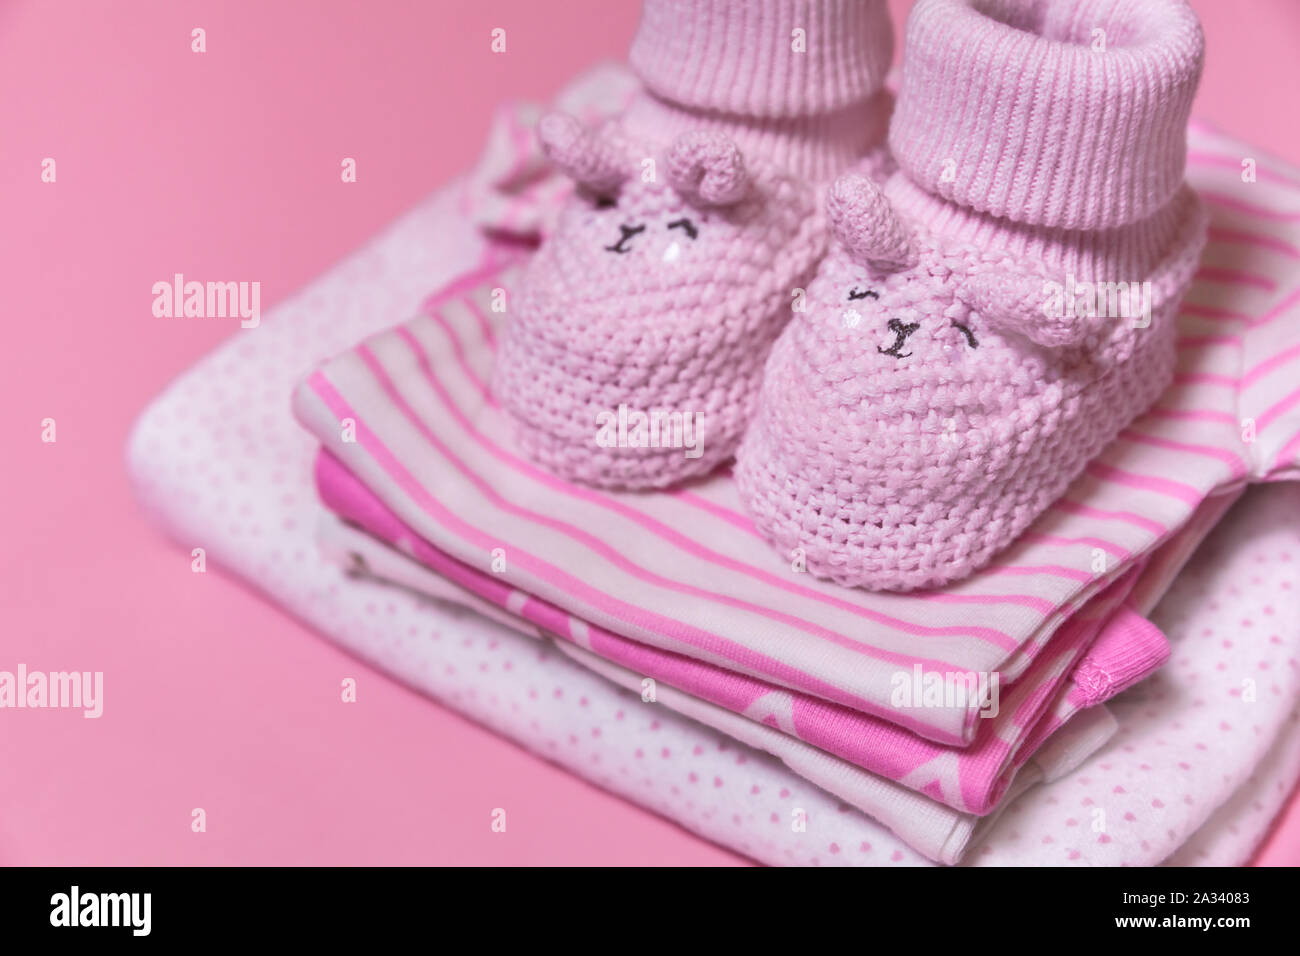 Ropa de bebé ganchillo zapatos para una niña recién nacida un fondo de rosa, el embarazo concepto - Imagen Fotografía stock - Alamy